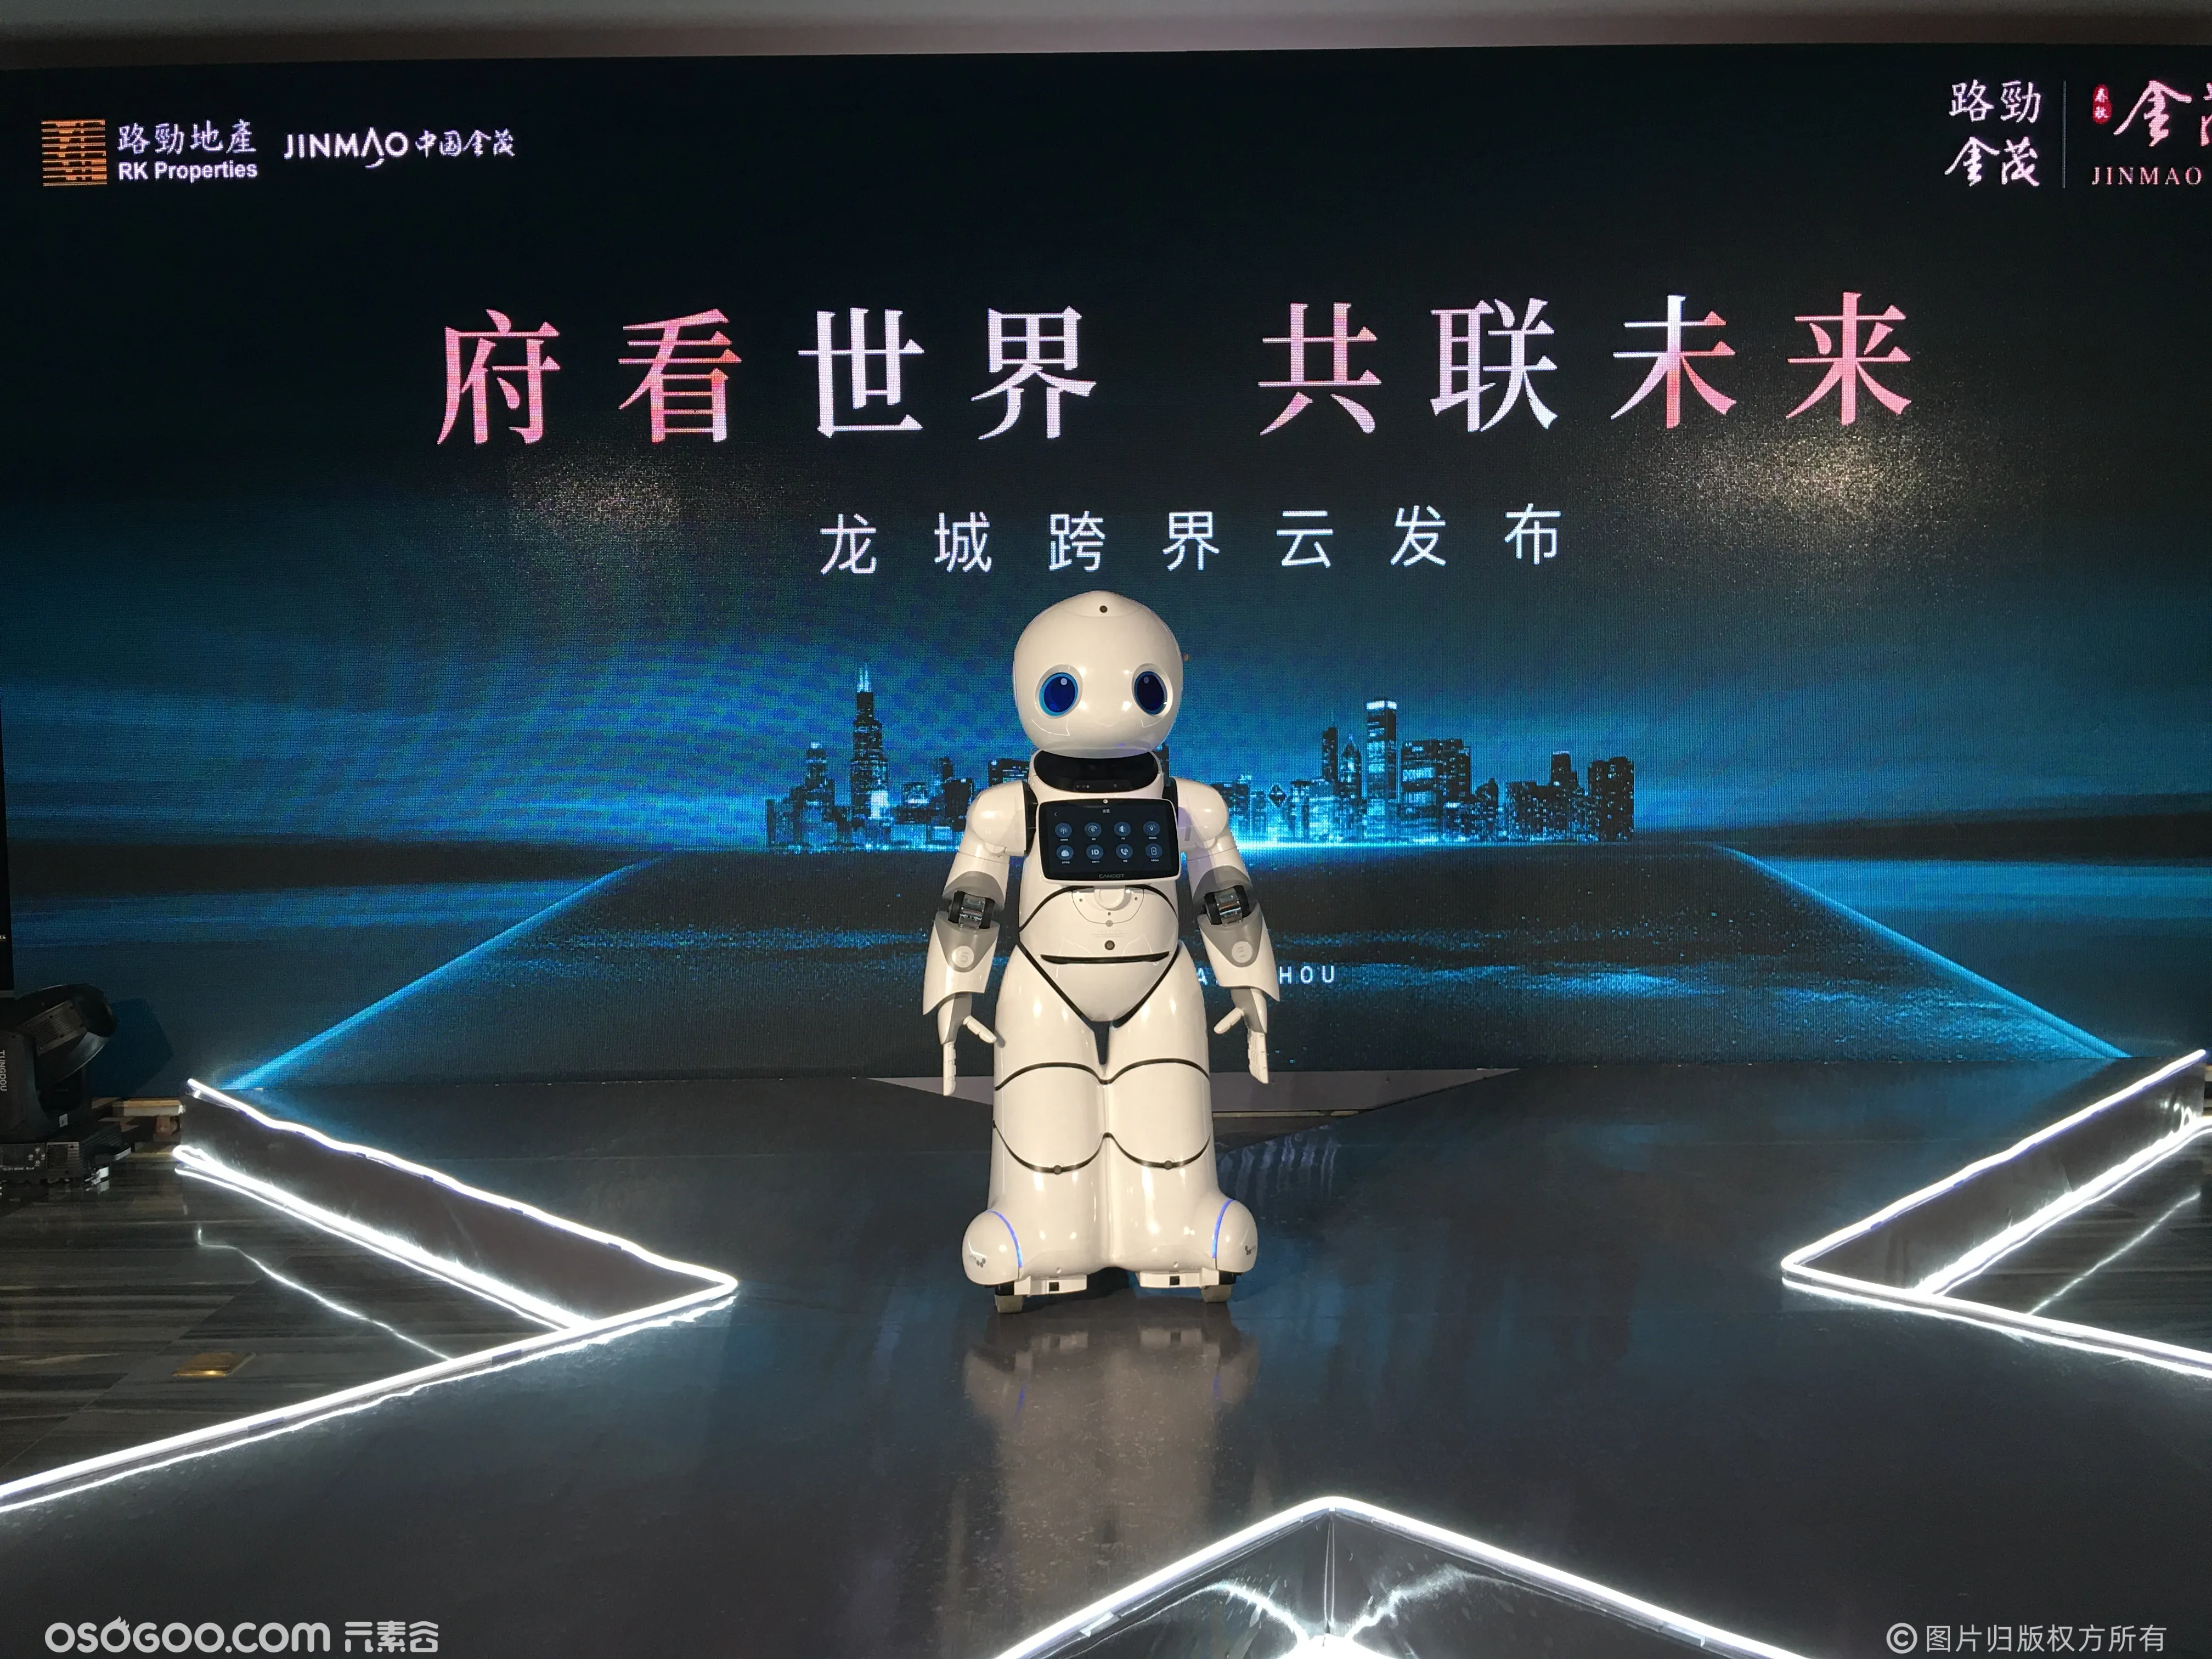 上海金茂地产会议活动 机器人茂茂互动主持 迎宾接待 咨询问答